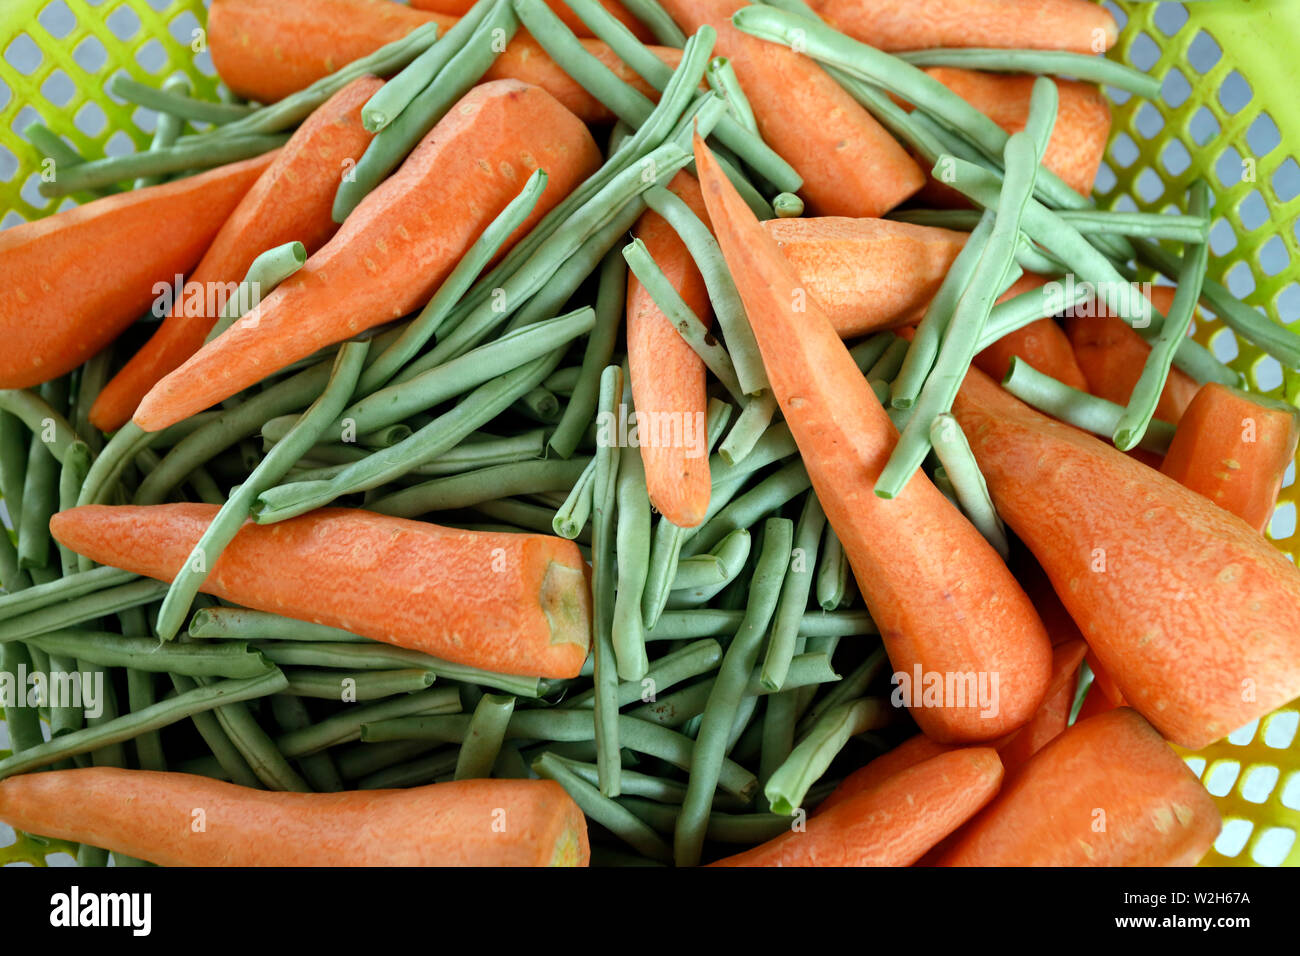 Nahaufnahme der Organischen carrotsand grüne Bohnen in einem Korb. Ha Tien. Vietnam. Stockfoto